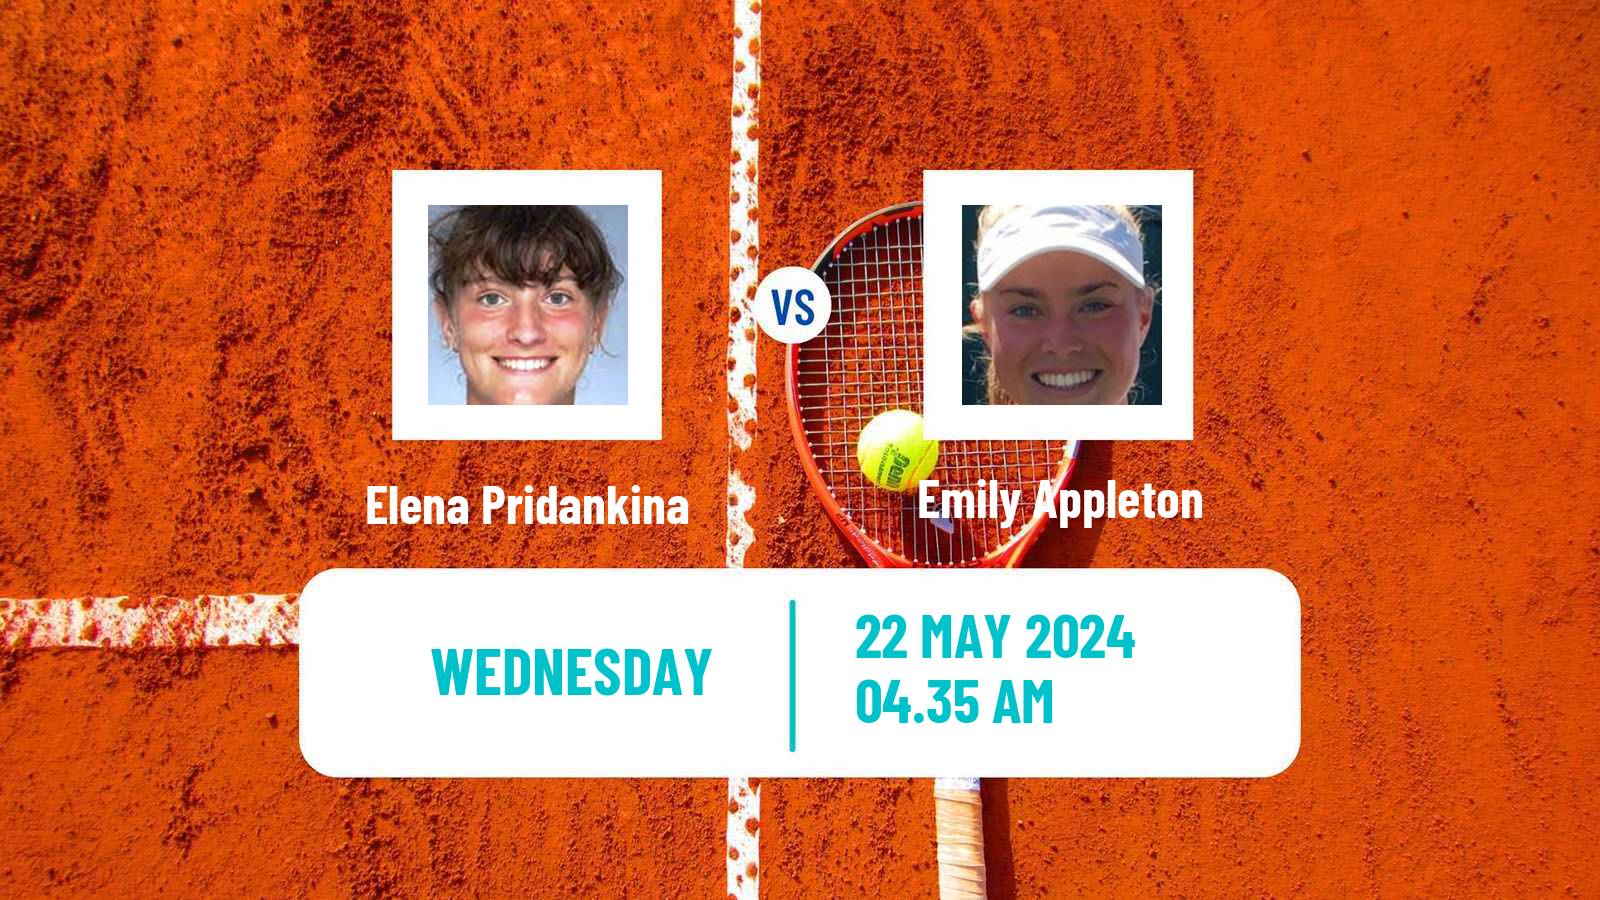 Tennis ITF W75 Grado Women Elena Pridankina - Emily Appleton